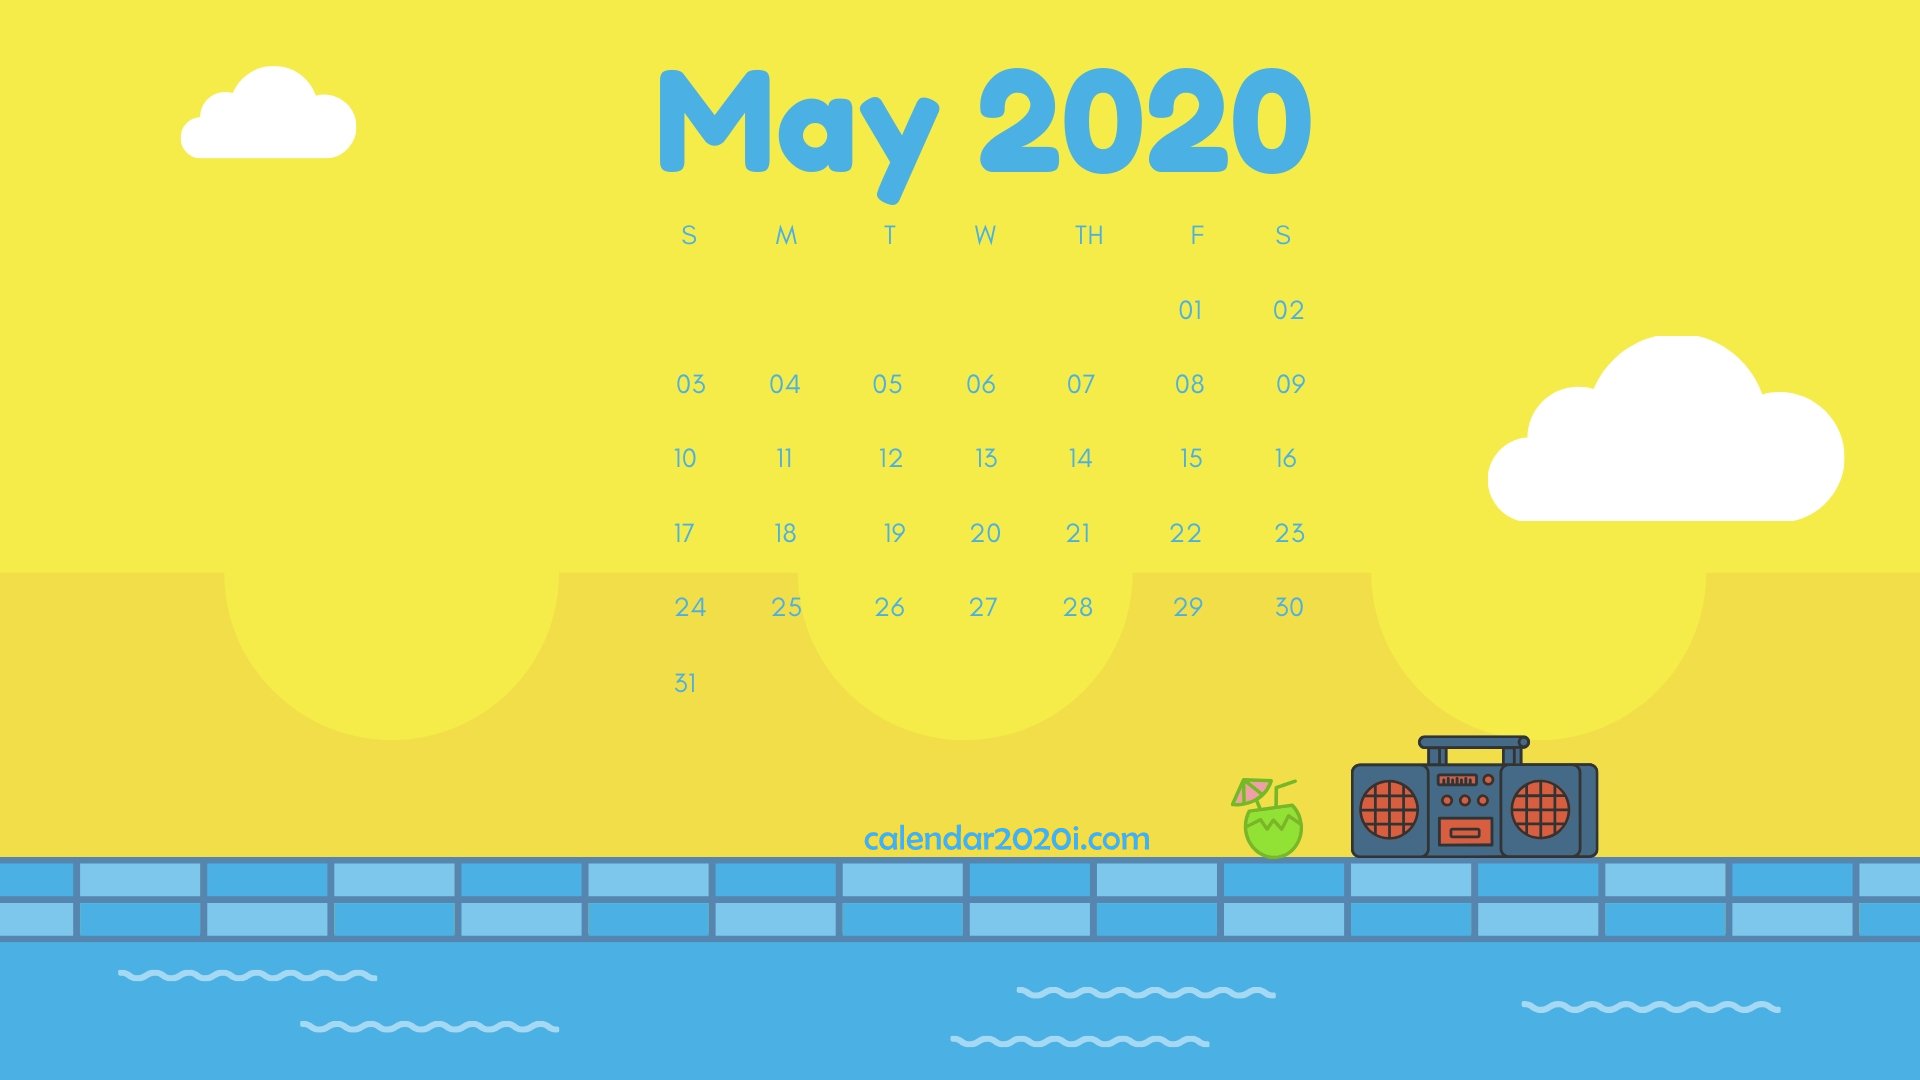 2020 Calendar Hd Wallpaper - May 2020 Cute Calendar - HD Wallpaper 